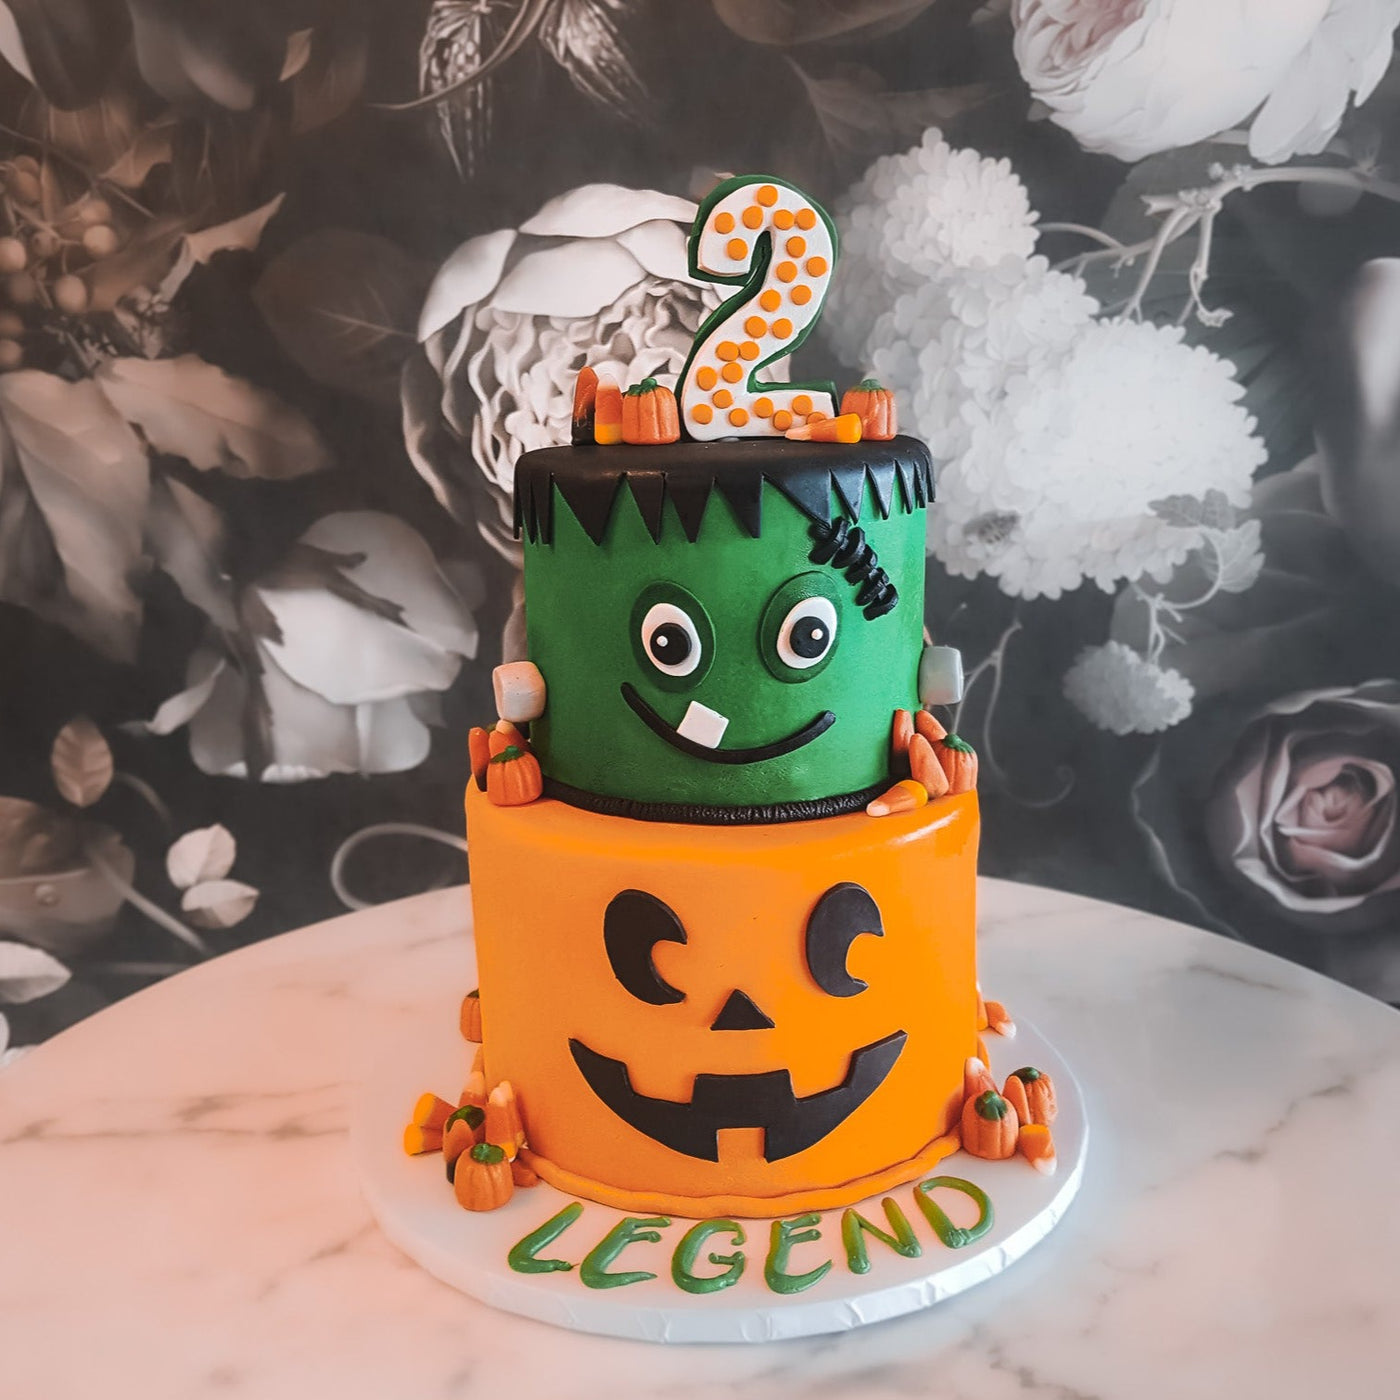 Beki Cook's Cake Blog: Easy Halloween Eyeballs Cake